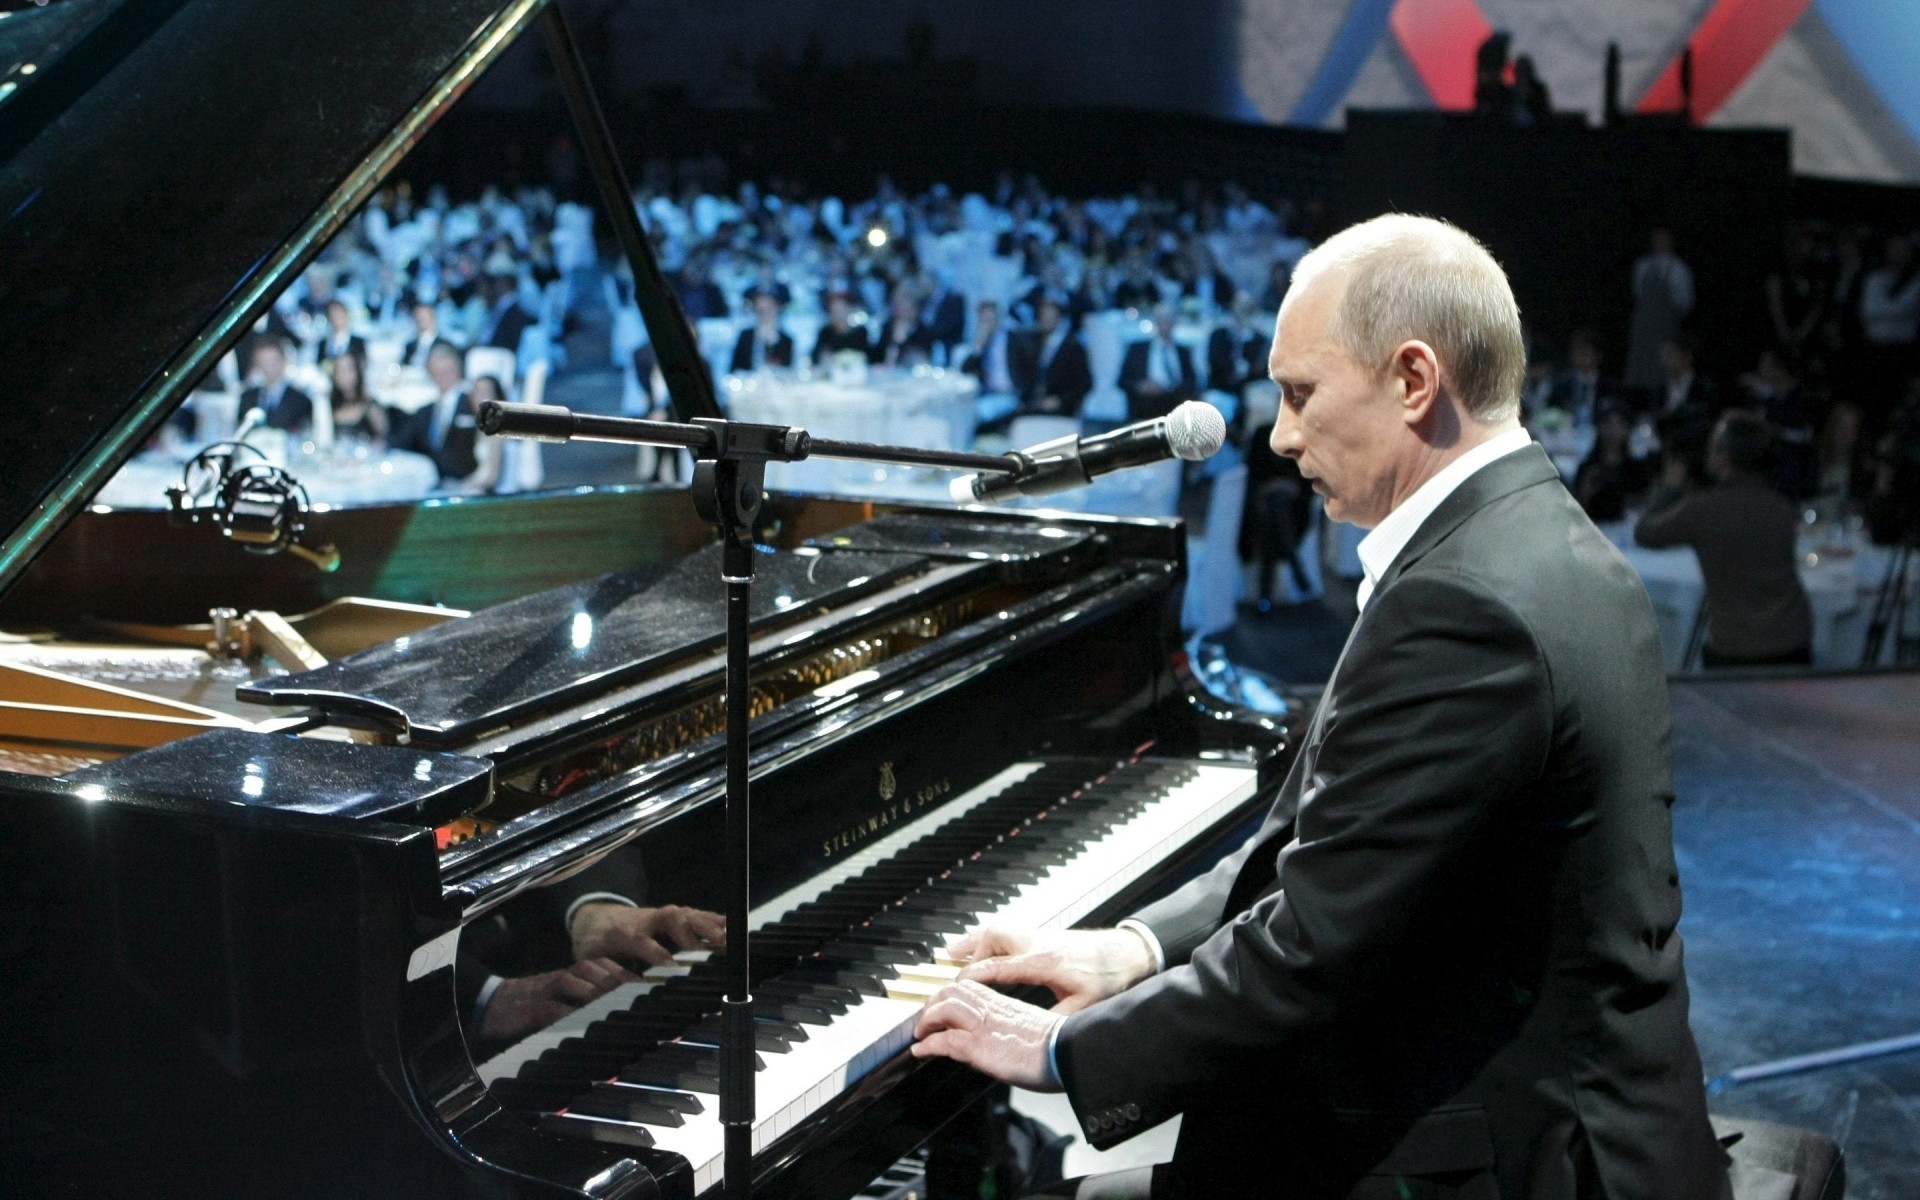 политики фортепиано музыка музыкант инструмент пианист производительности концерт фестиваль один человек взрослый путин микрофон мужчина мужчины